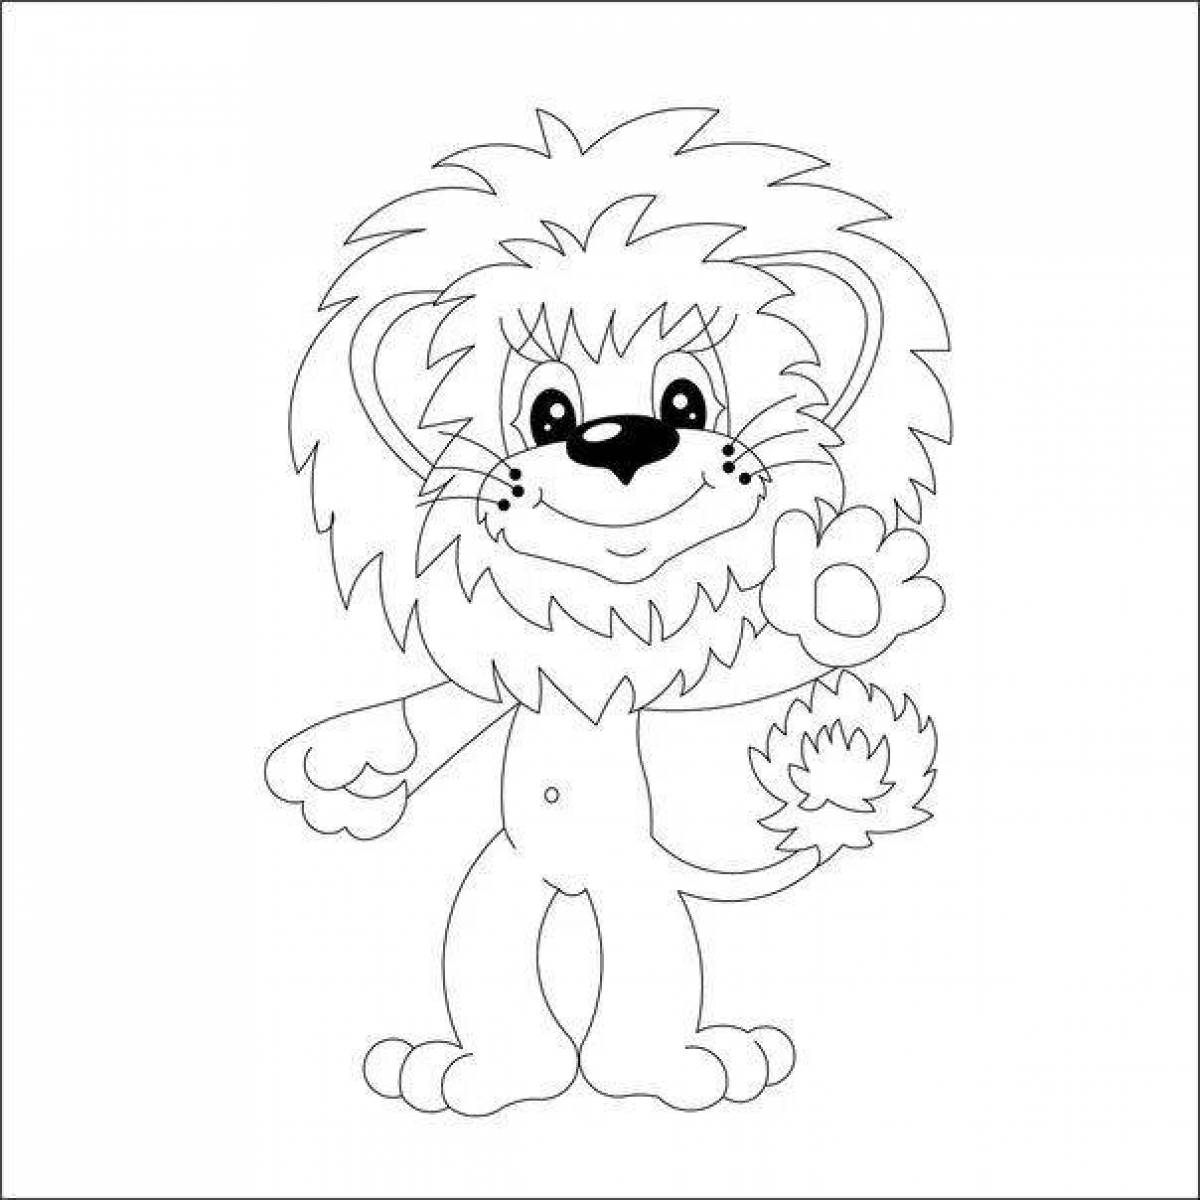 Coloring page adorable lion cub